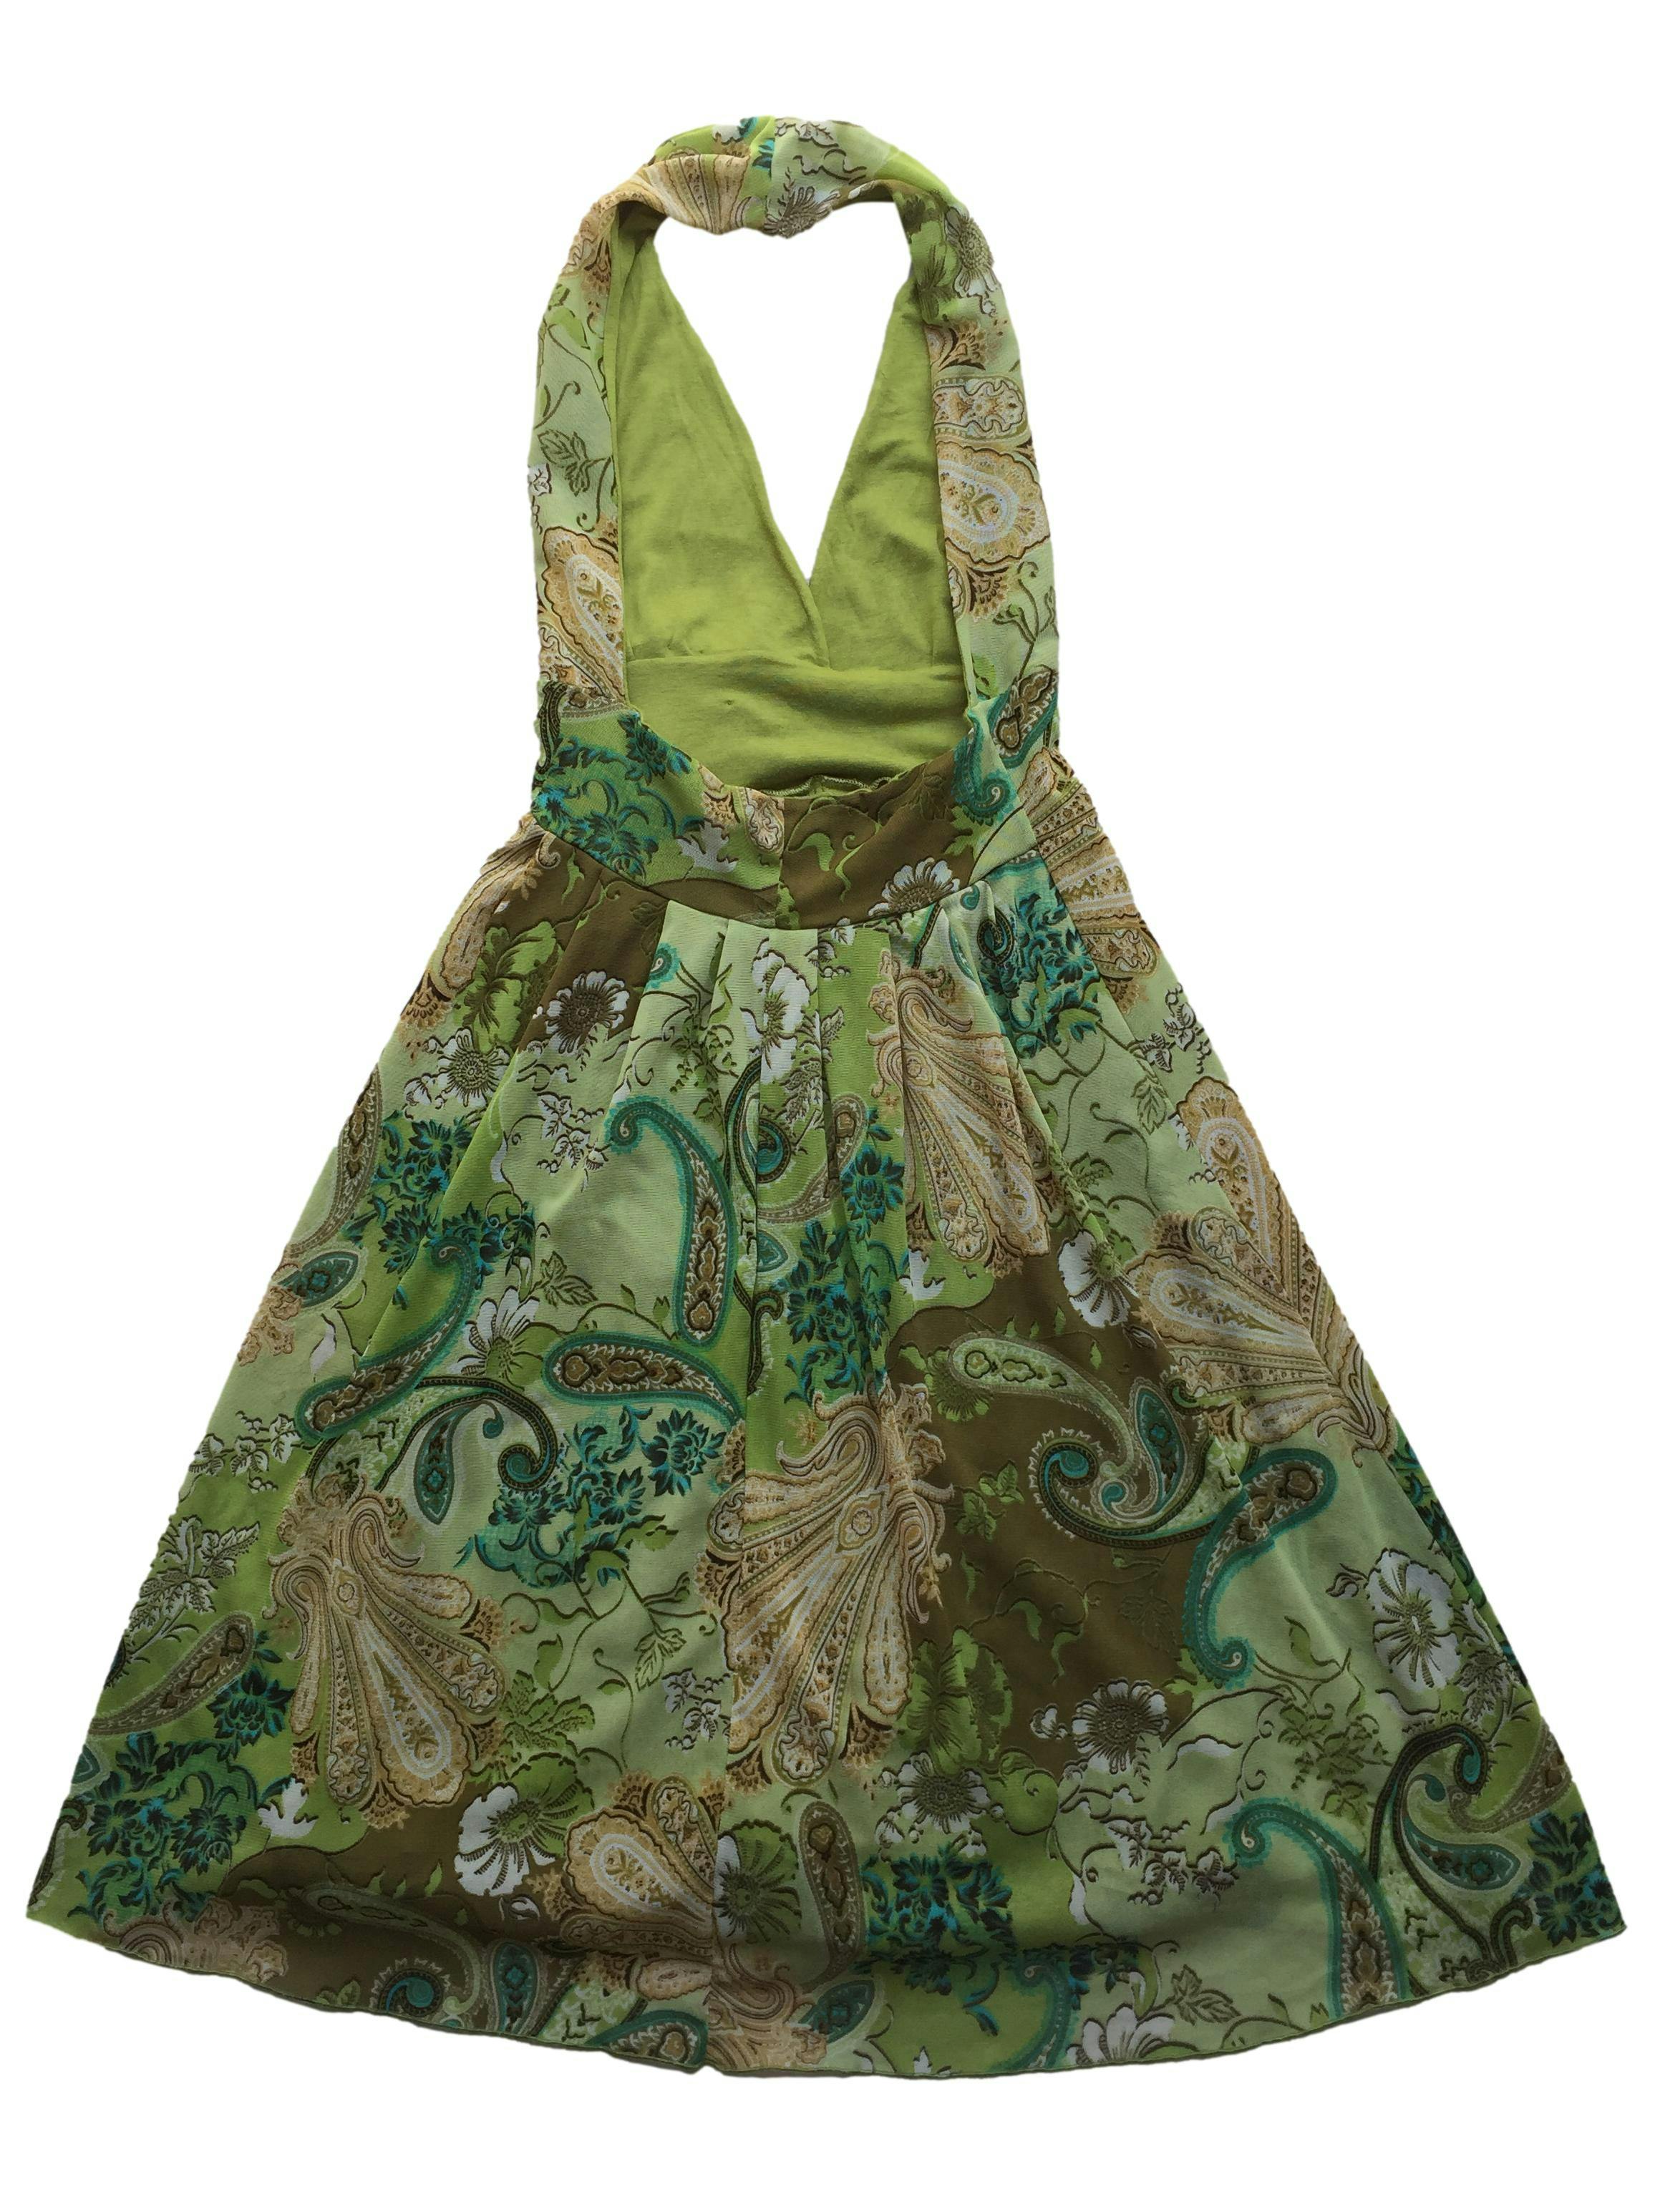 Vestido de mesh verde con estampado floral, forro y cuello halter. Largo 105cm.